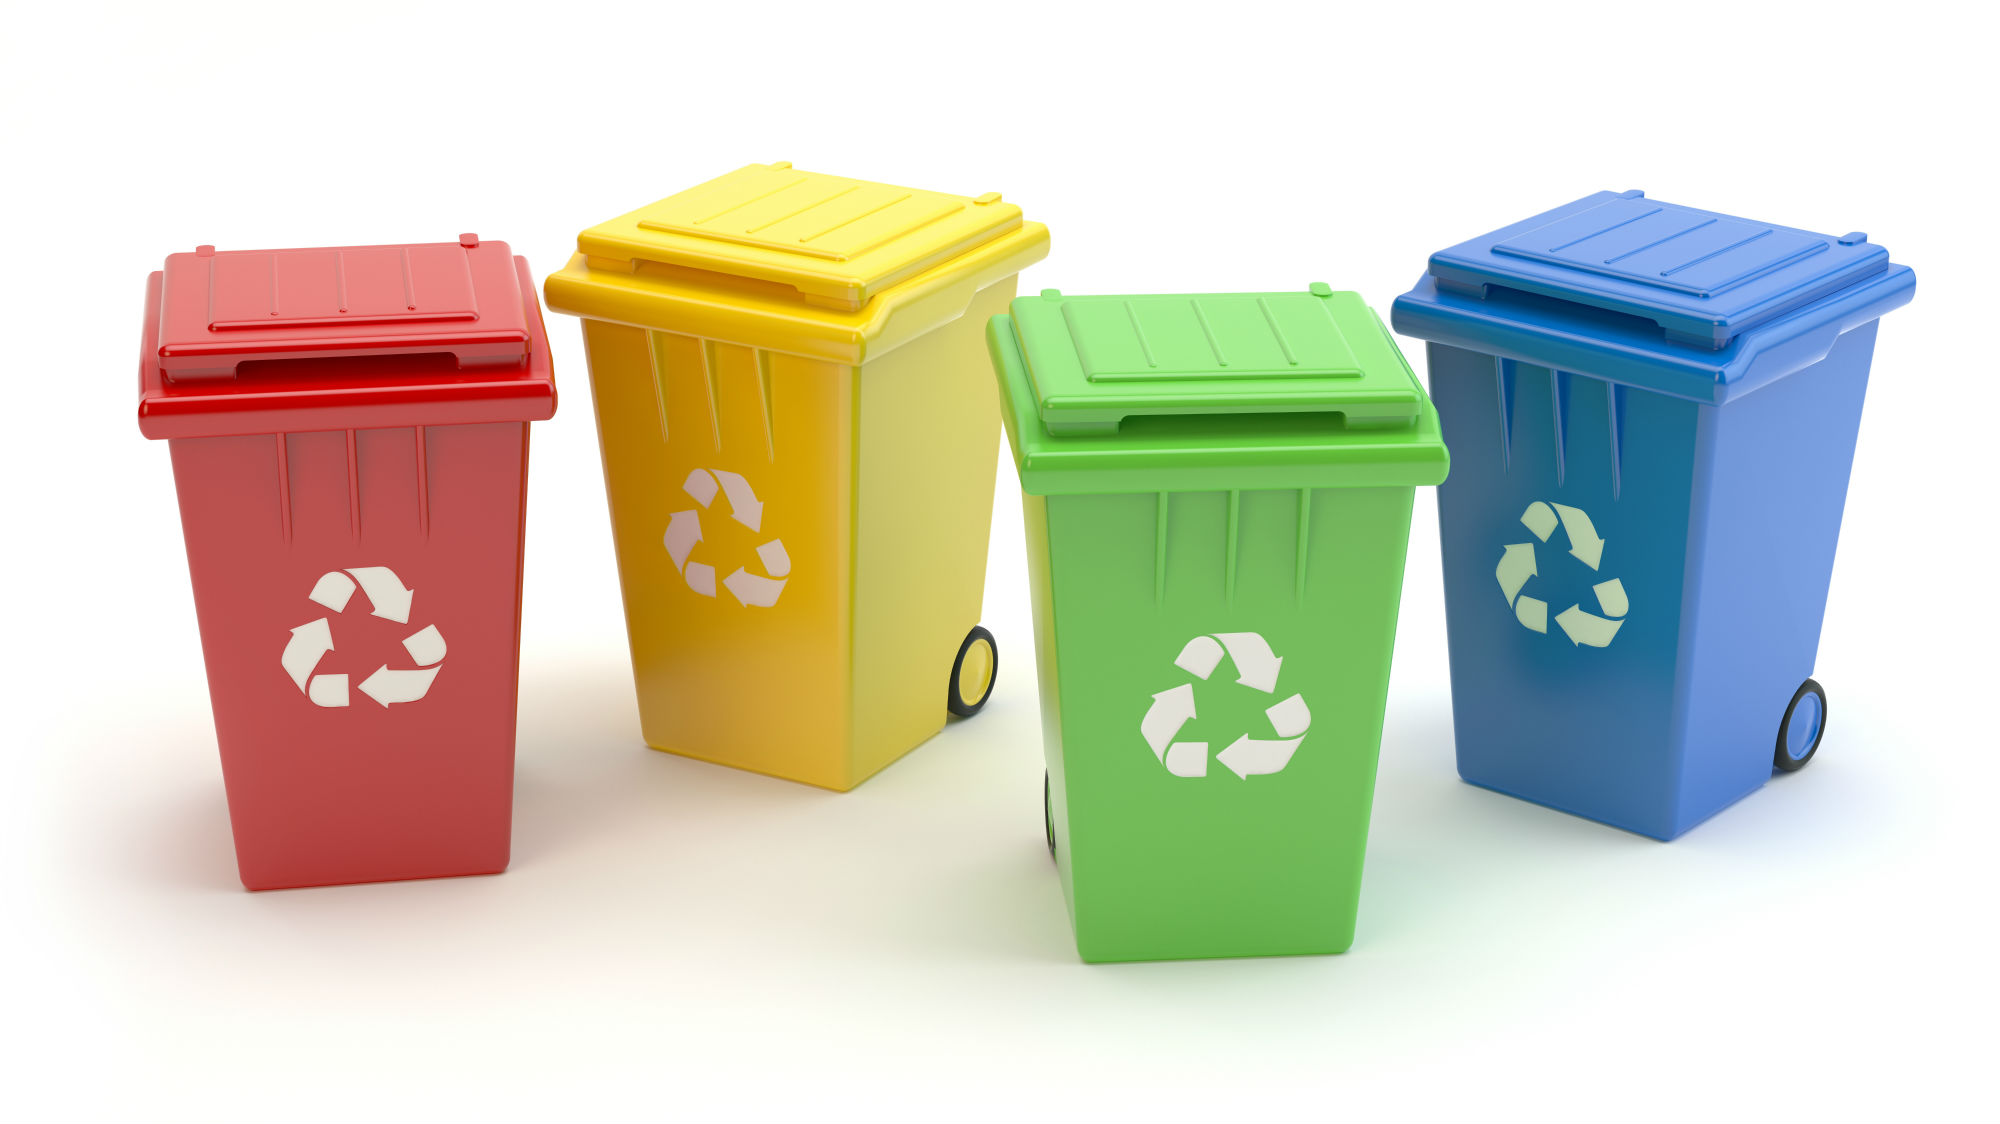 gastvrouw Interpunctie armoede Simpel afval scheiden met kleuren voor afvalscheiding | Blog Manutan